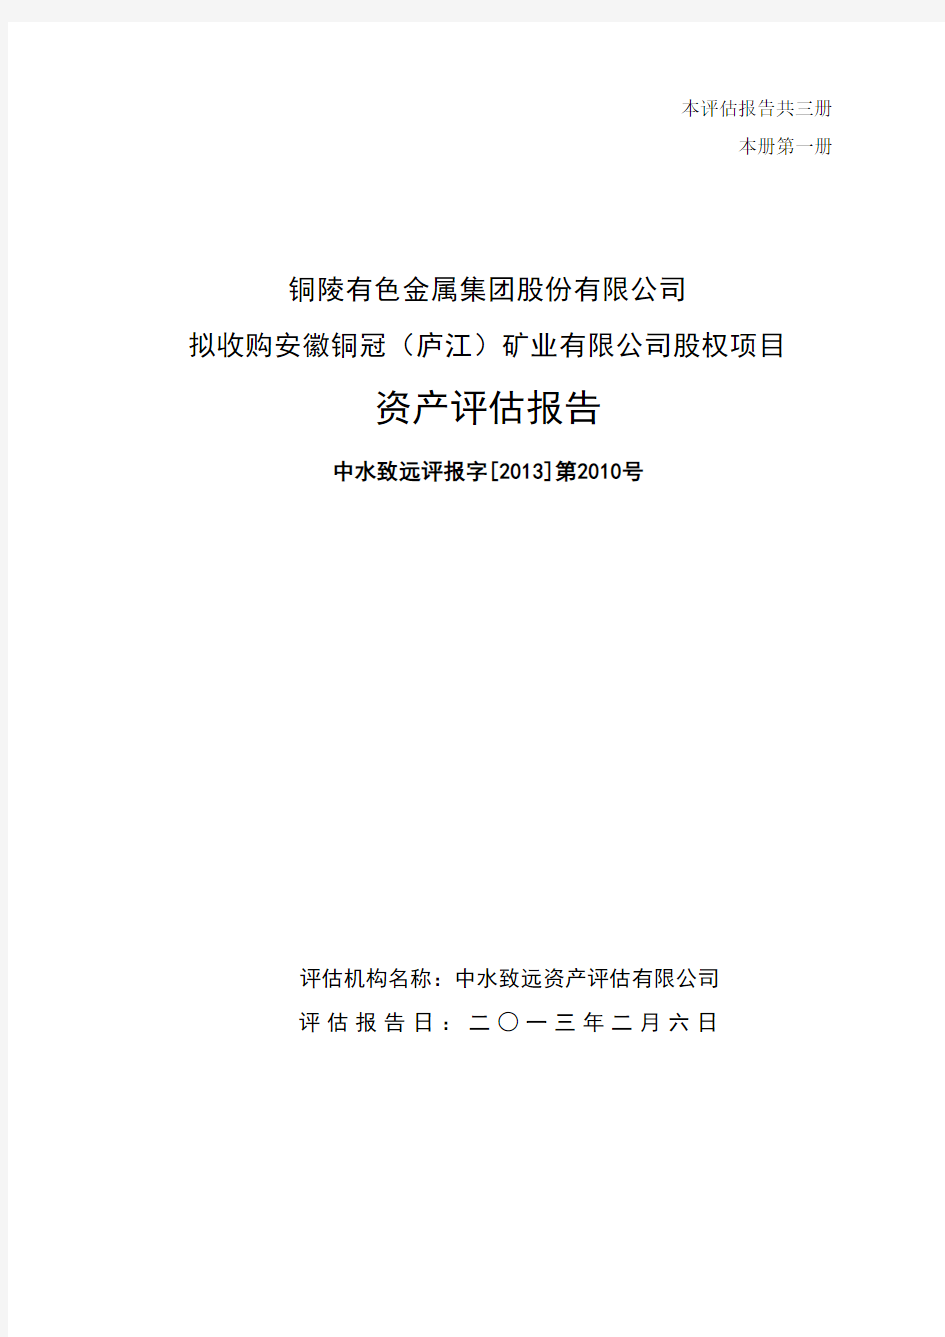 收购安徽铜冠(庐江)矿业有限公司股权项目资产评估报告62141811[1]